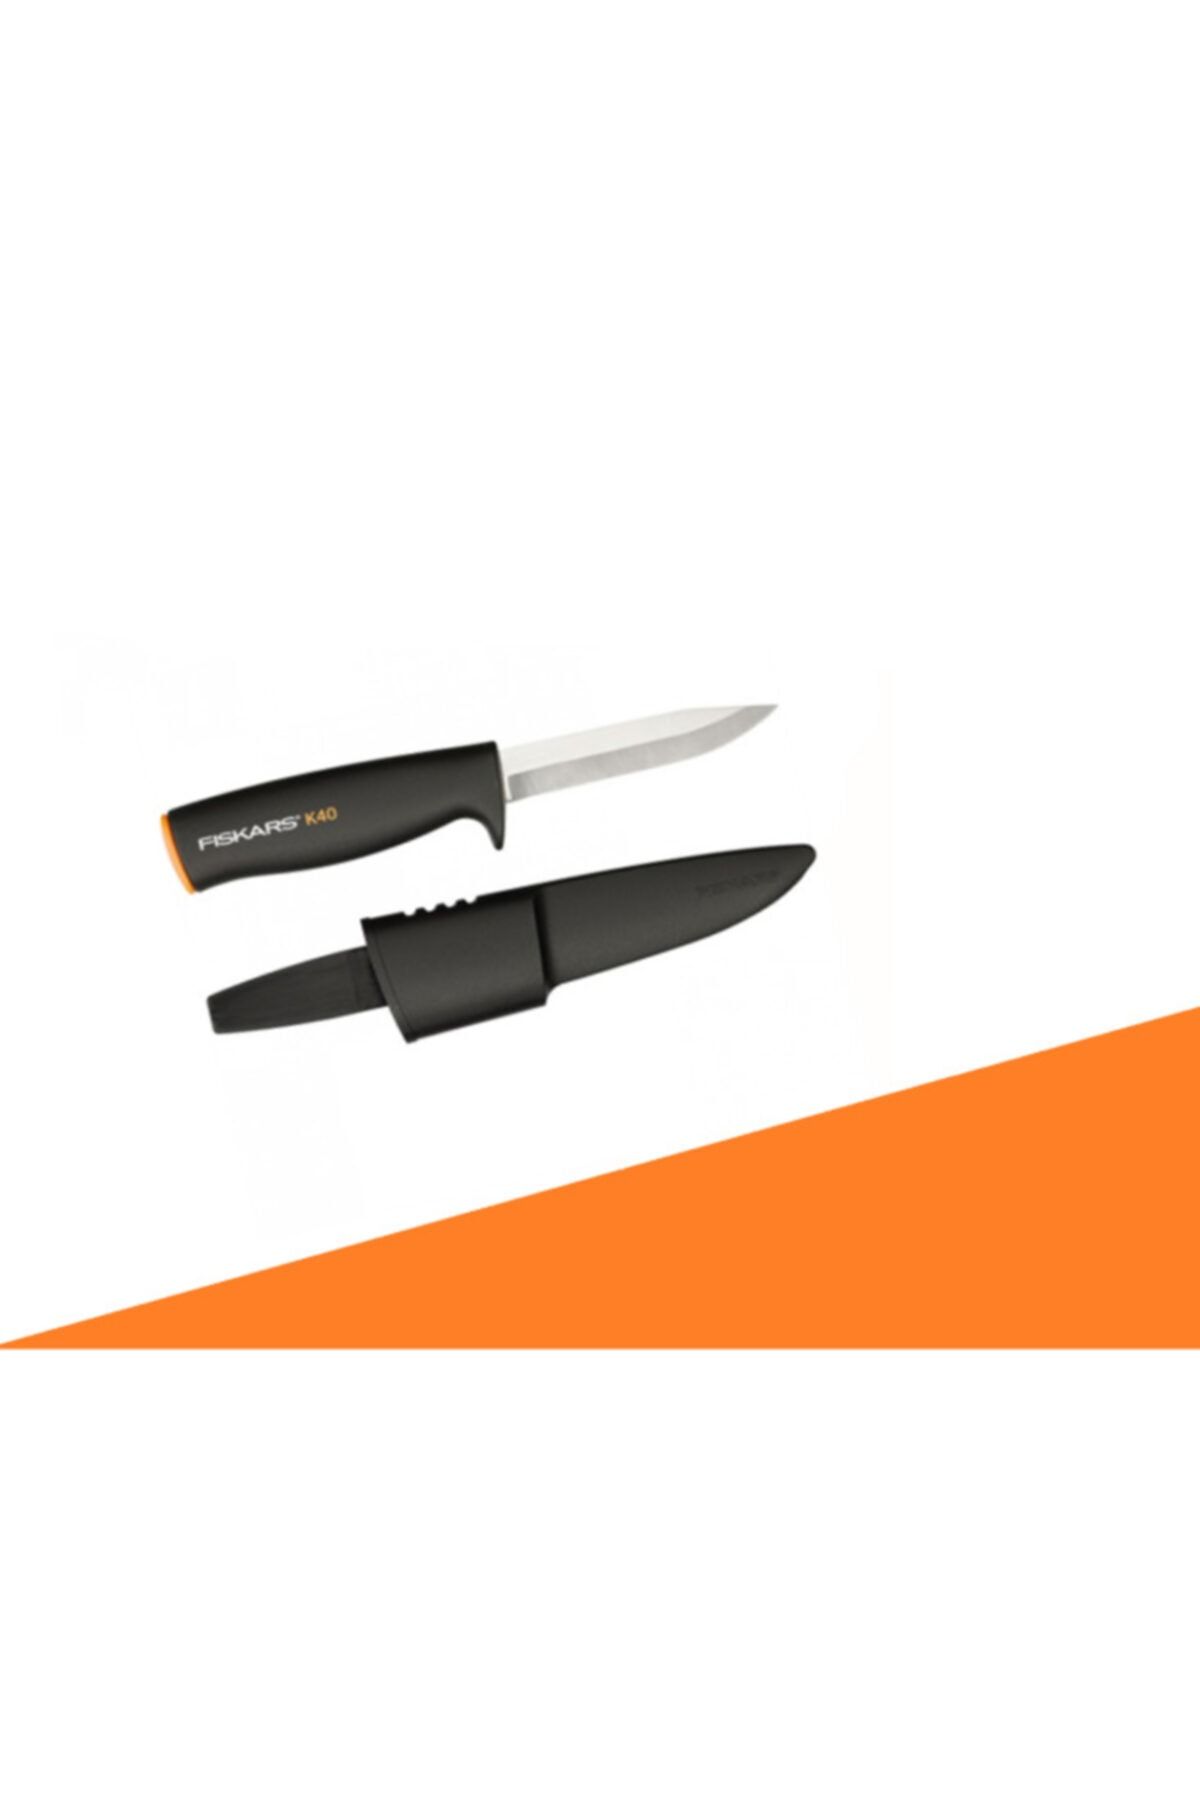 FiSKARS Fıskars genel Kullanım Bıçağı K40 125860-1001622